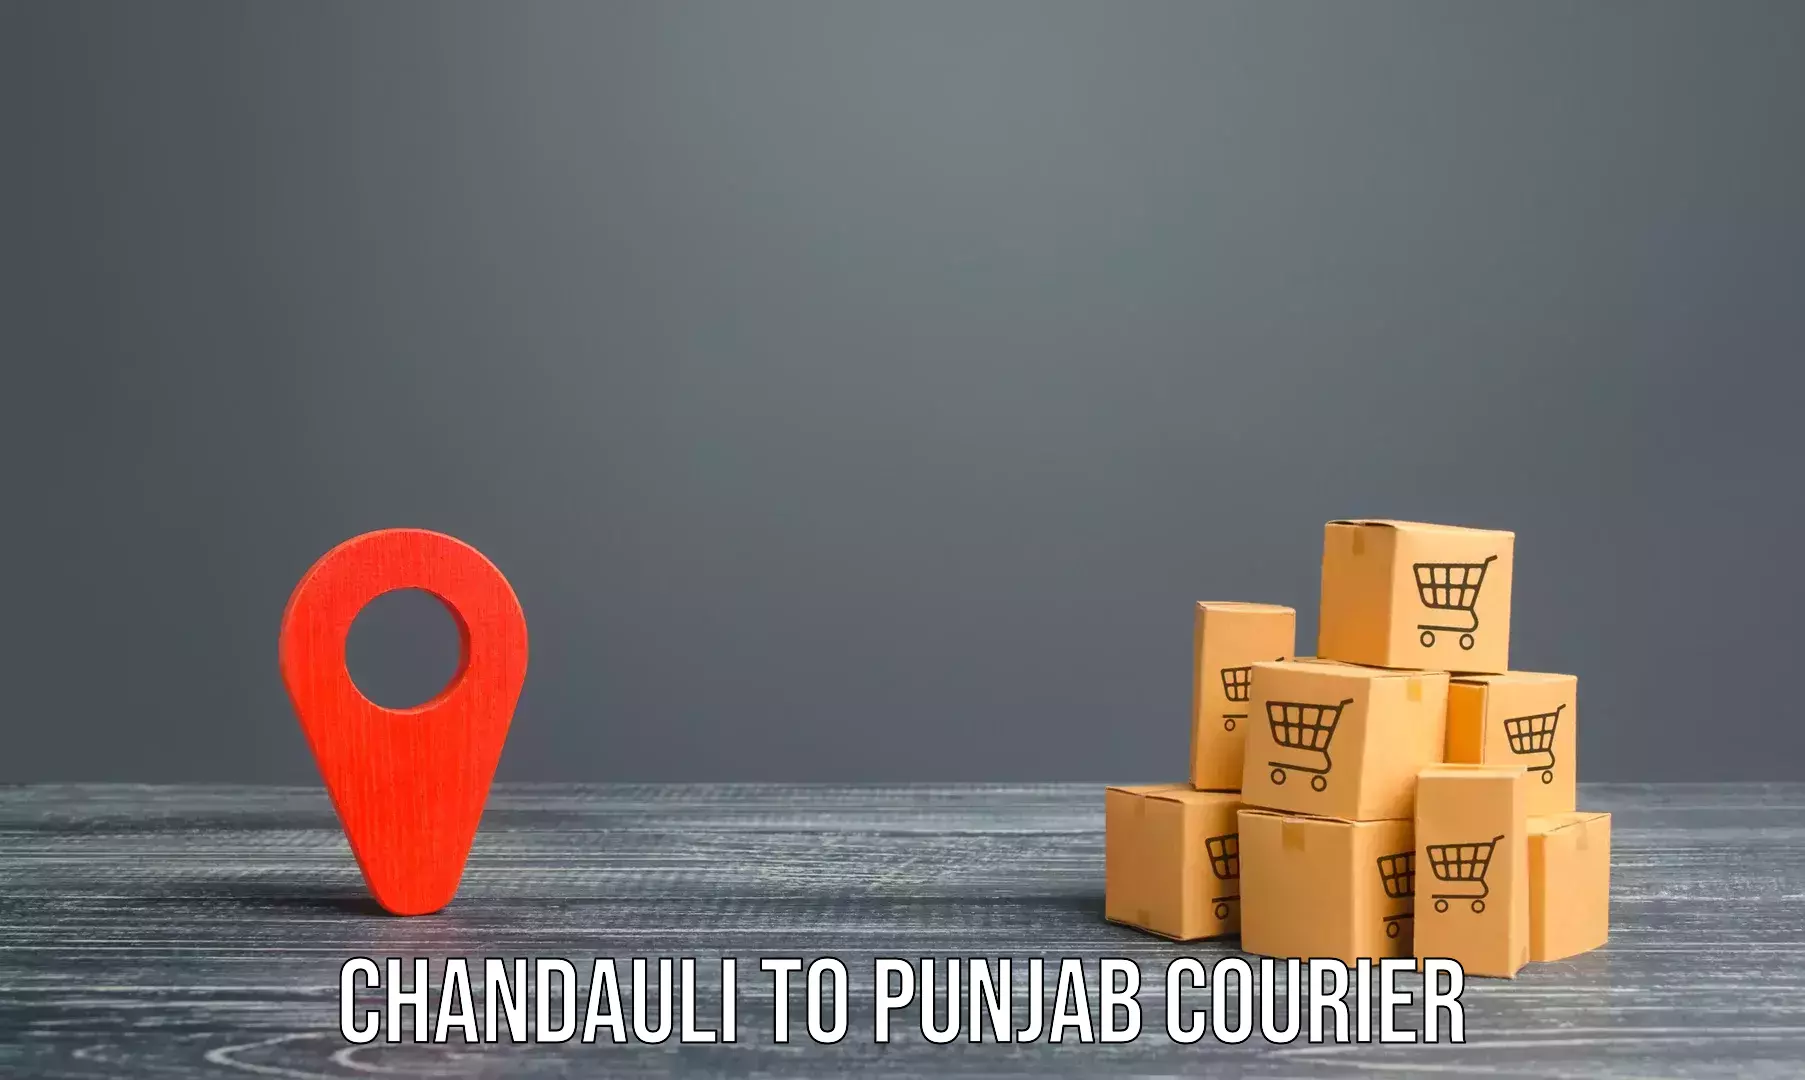 Furniture transport service Chandauli to Pathankot